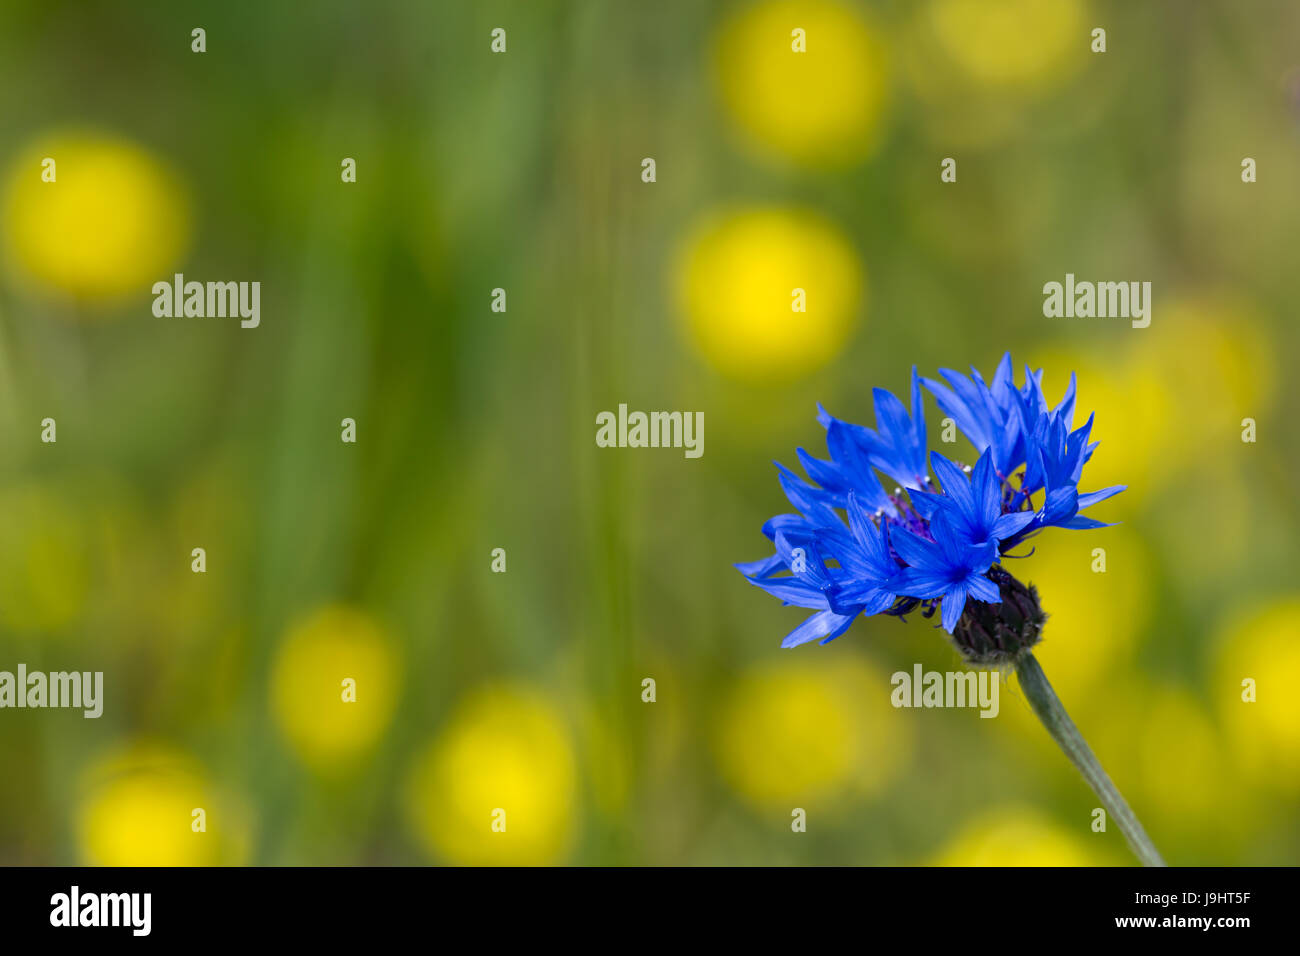 field, summer, summerly, brandenburg, spring, meadow, nature, cornflower, Stock Photo